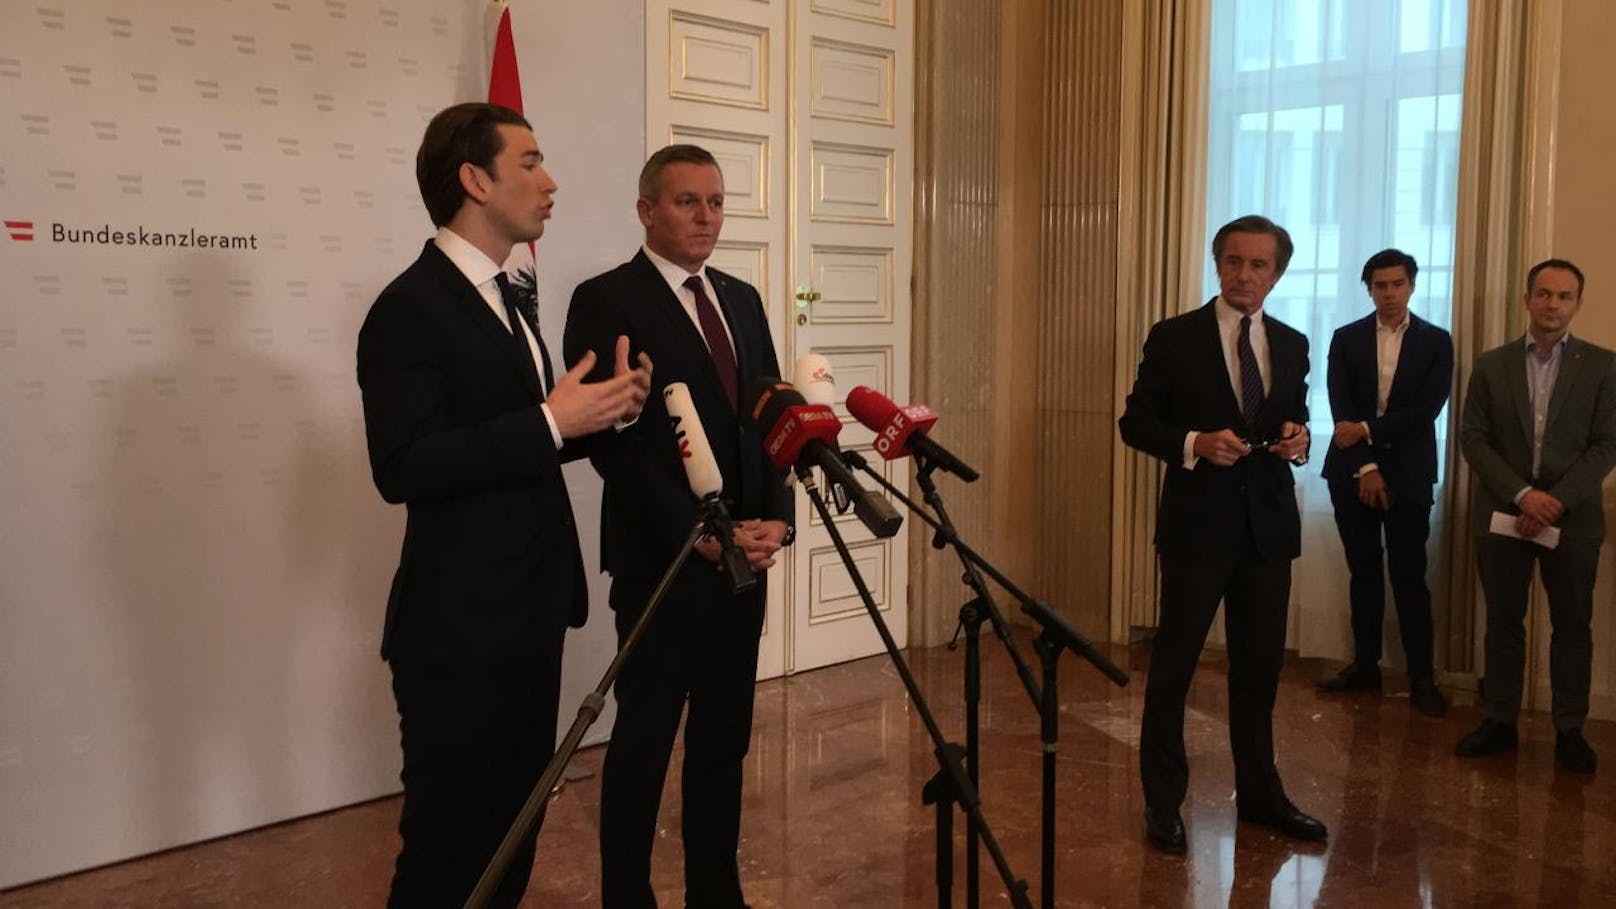 Bundeskanzler Sebastian Kurz (ÖVP) und Verteidigungsminister Mario Kunasek (FPÖ) bestätigten den Verdacht gegen einen pensionierten Bundesheer-Oberst am Freitag vor Medienvertretern.